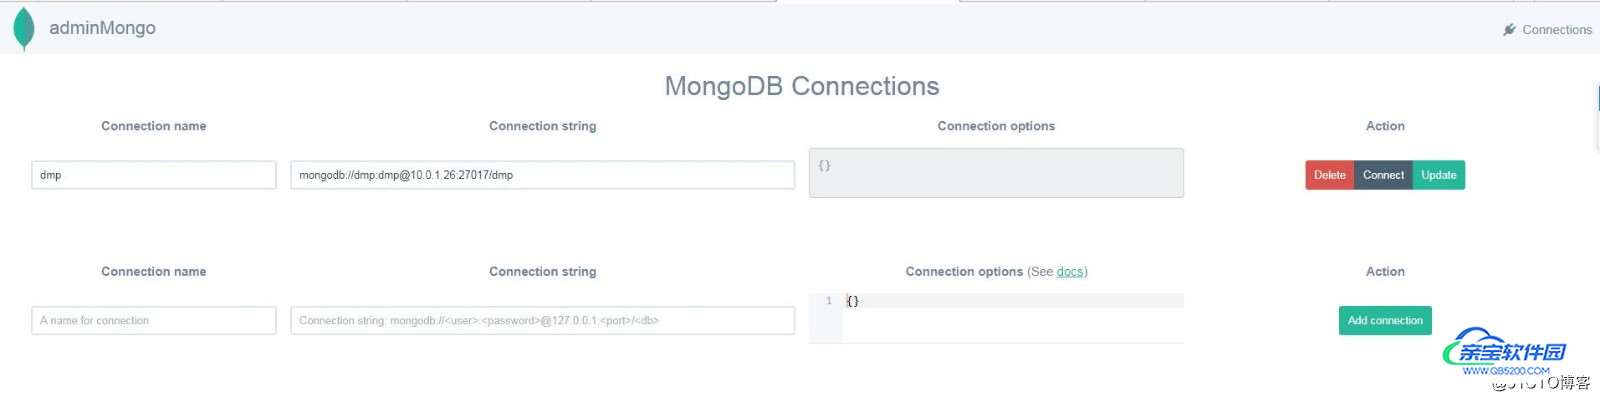 Mongodb 用户权限管理及配置